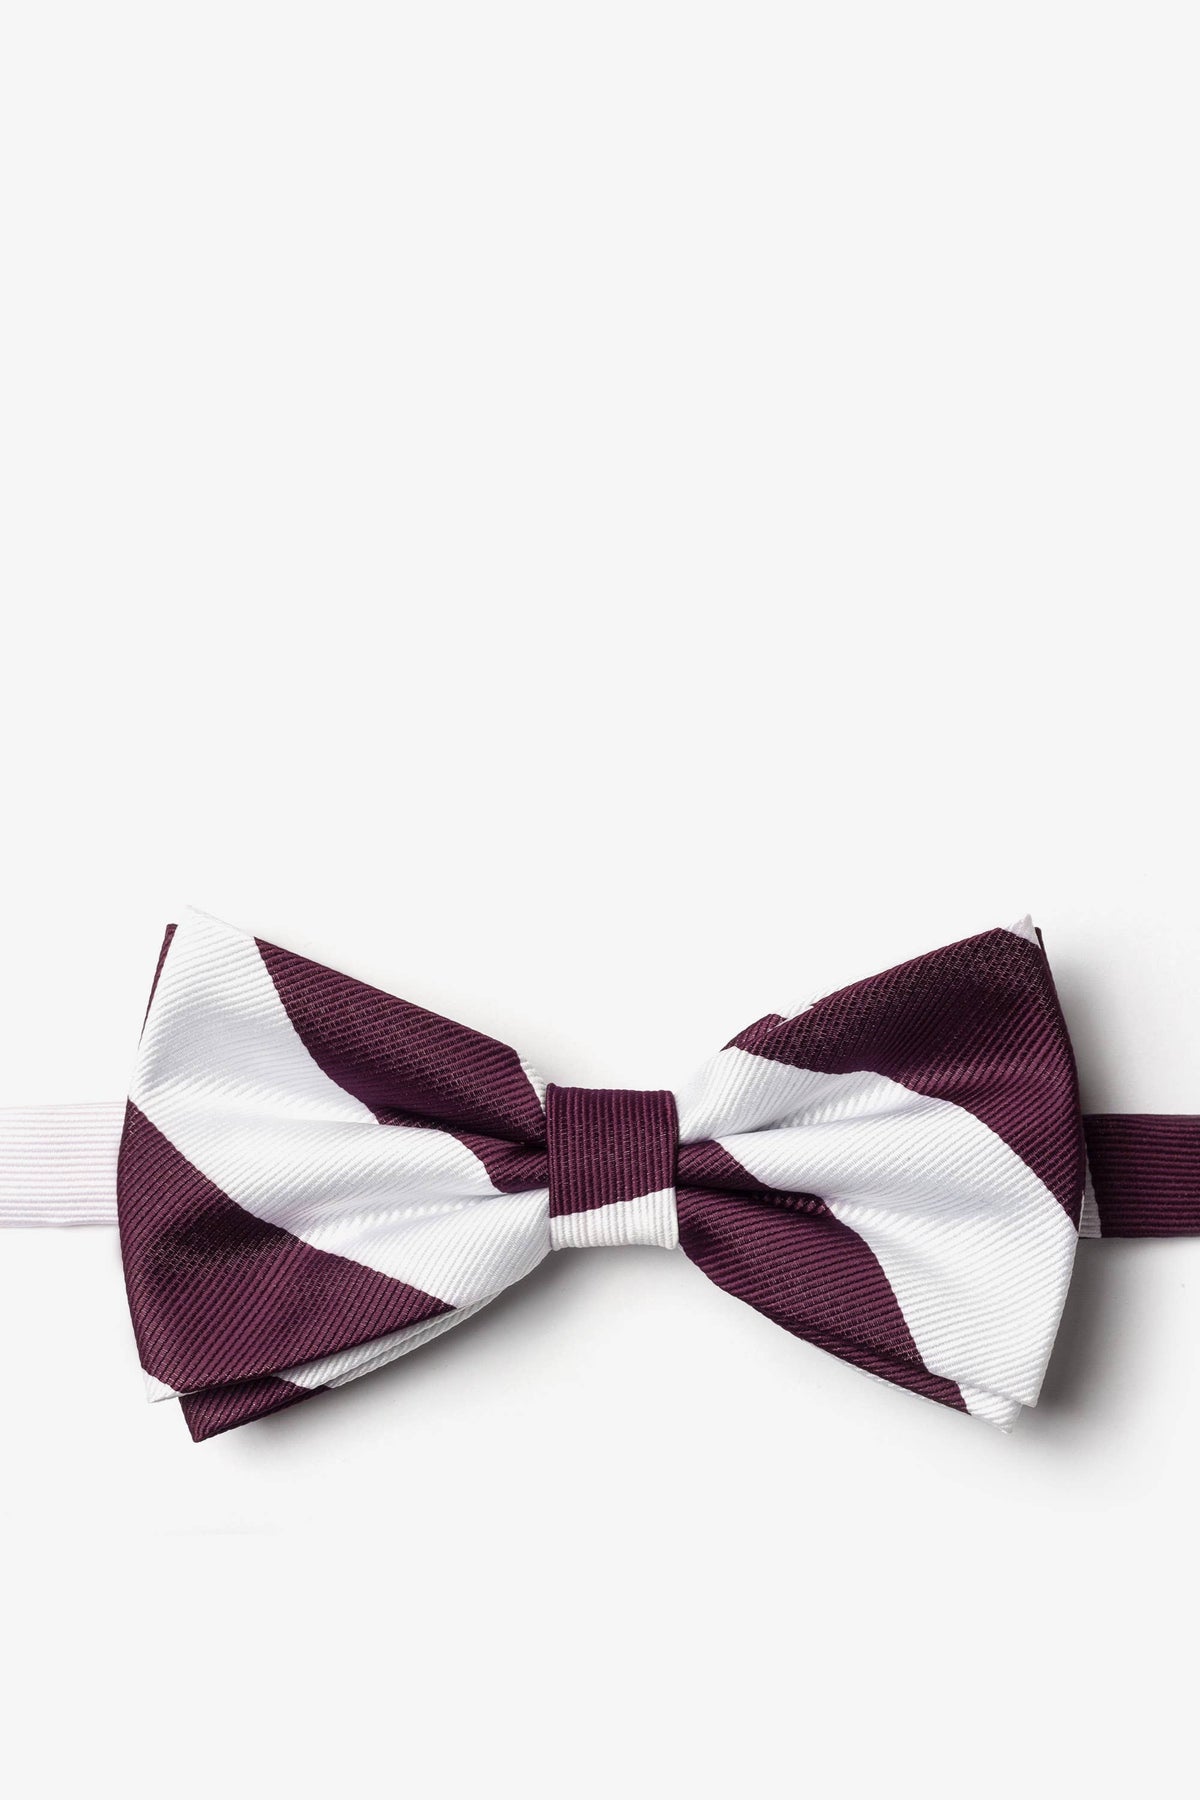 Maroon and White College Collegiate Stripe - School Colors: Self-Tie Bowtie